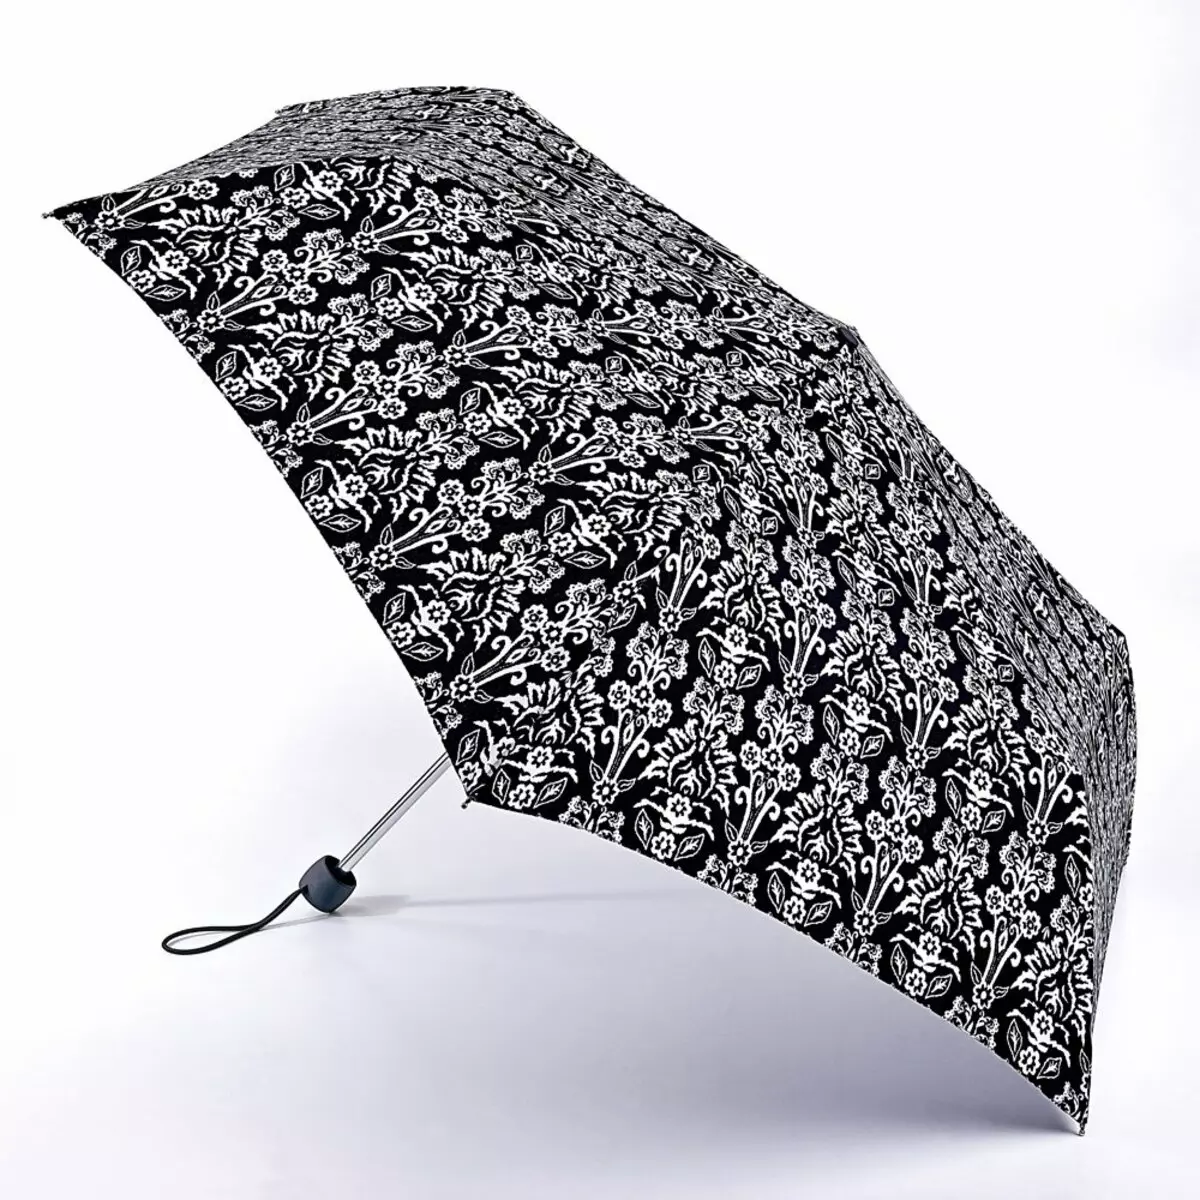 Fulton Umbrellas (53 fotos): skaaimerken fan modellen en resinsjes oer Umbrellas 15229_50